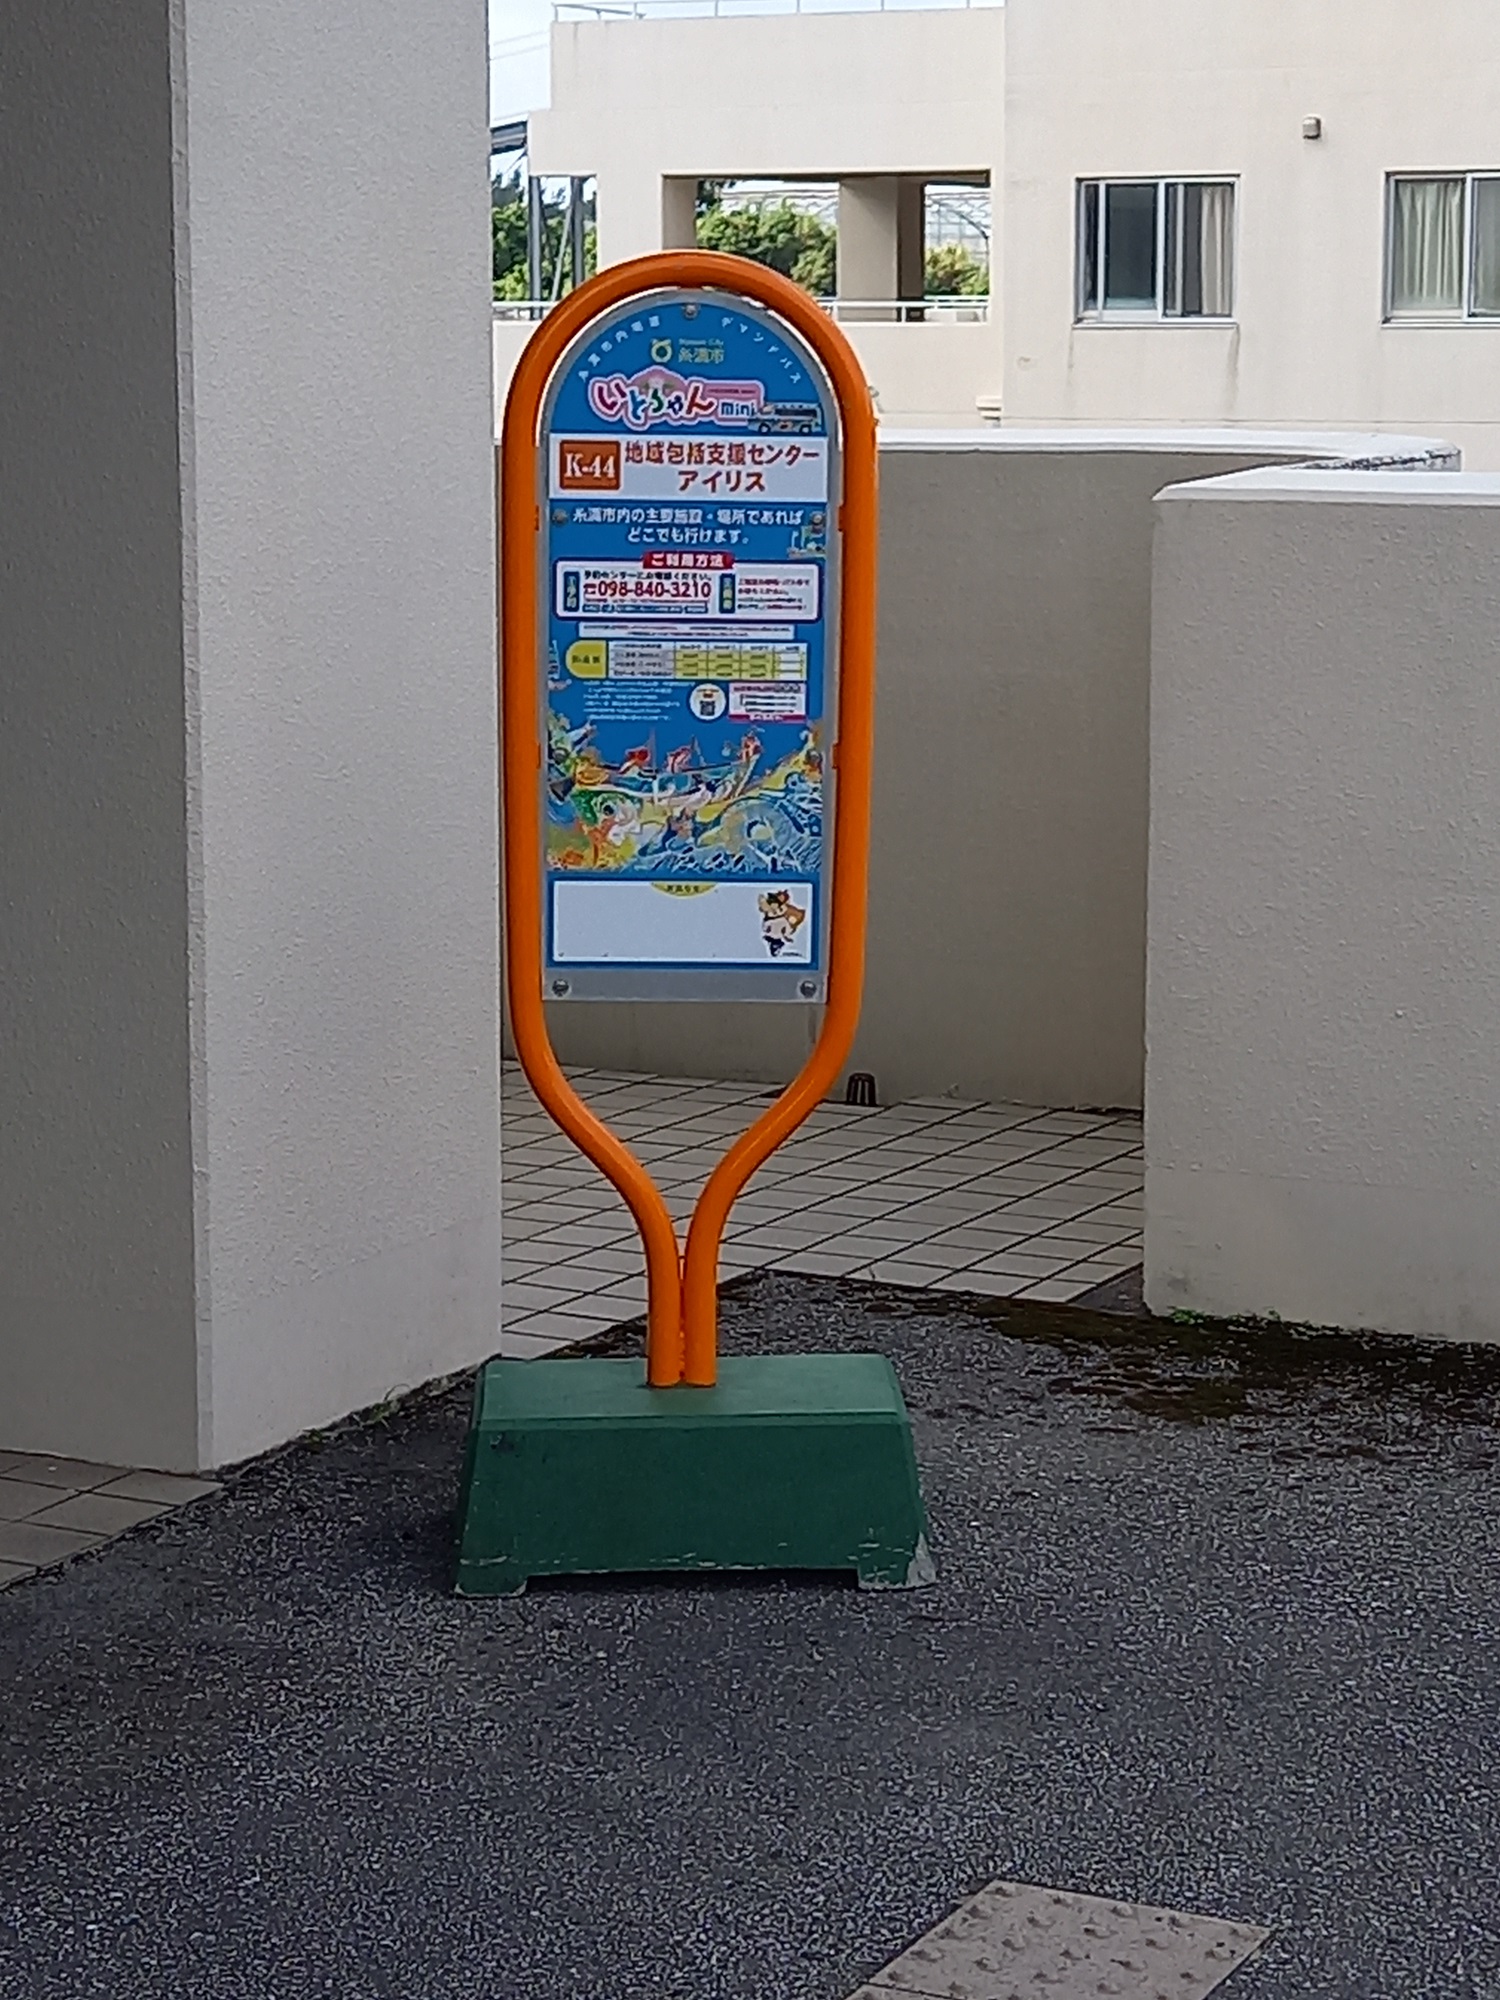 「いとちゃんmini」のバス停を設置のサムネイル画像